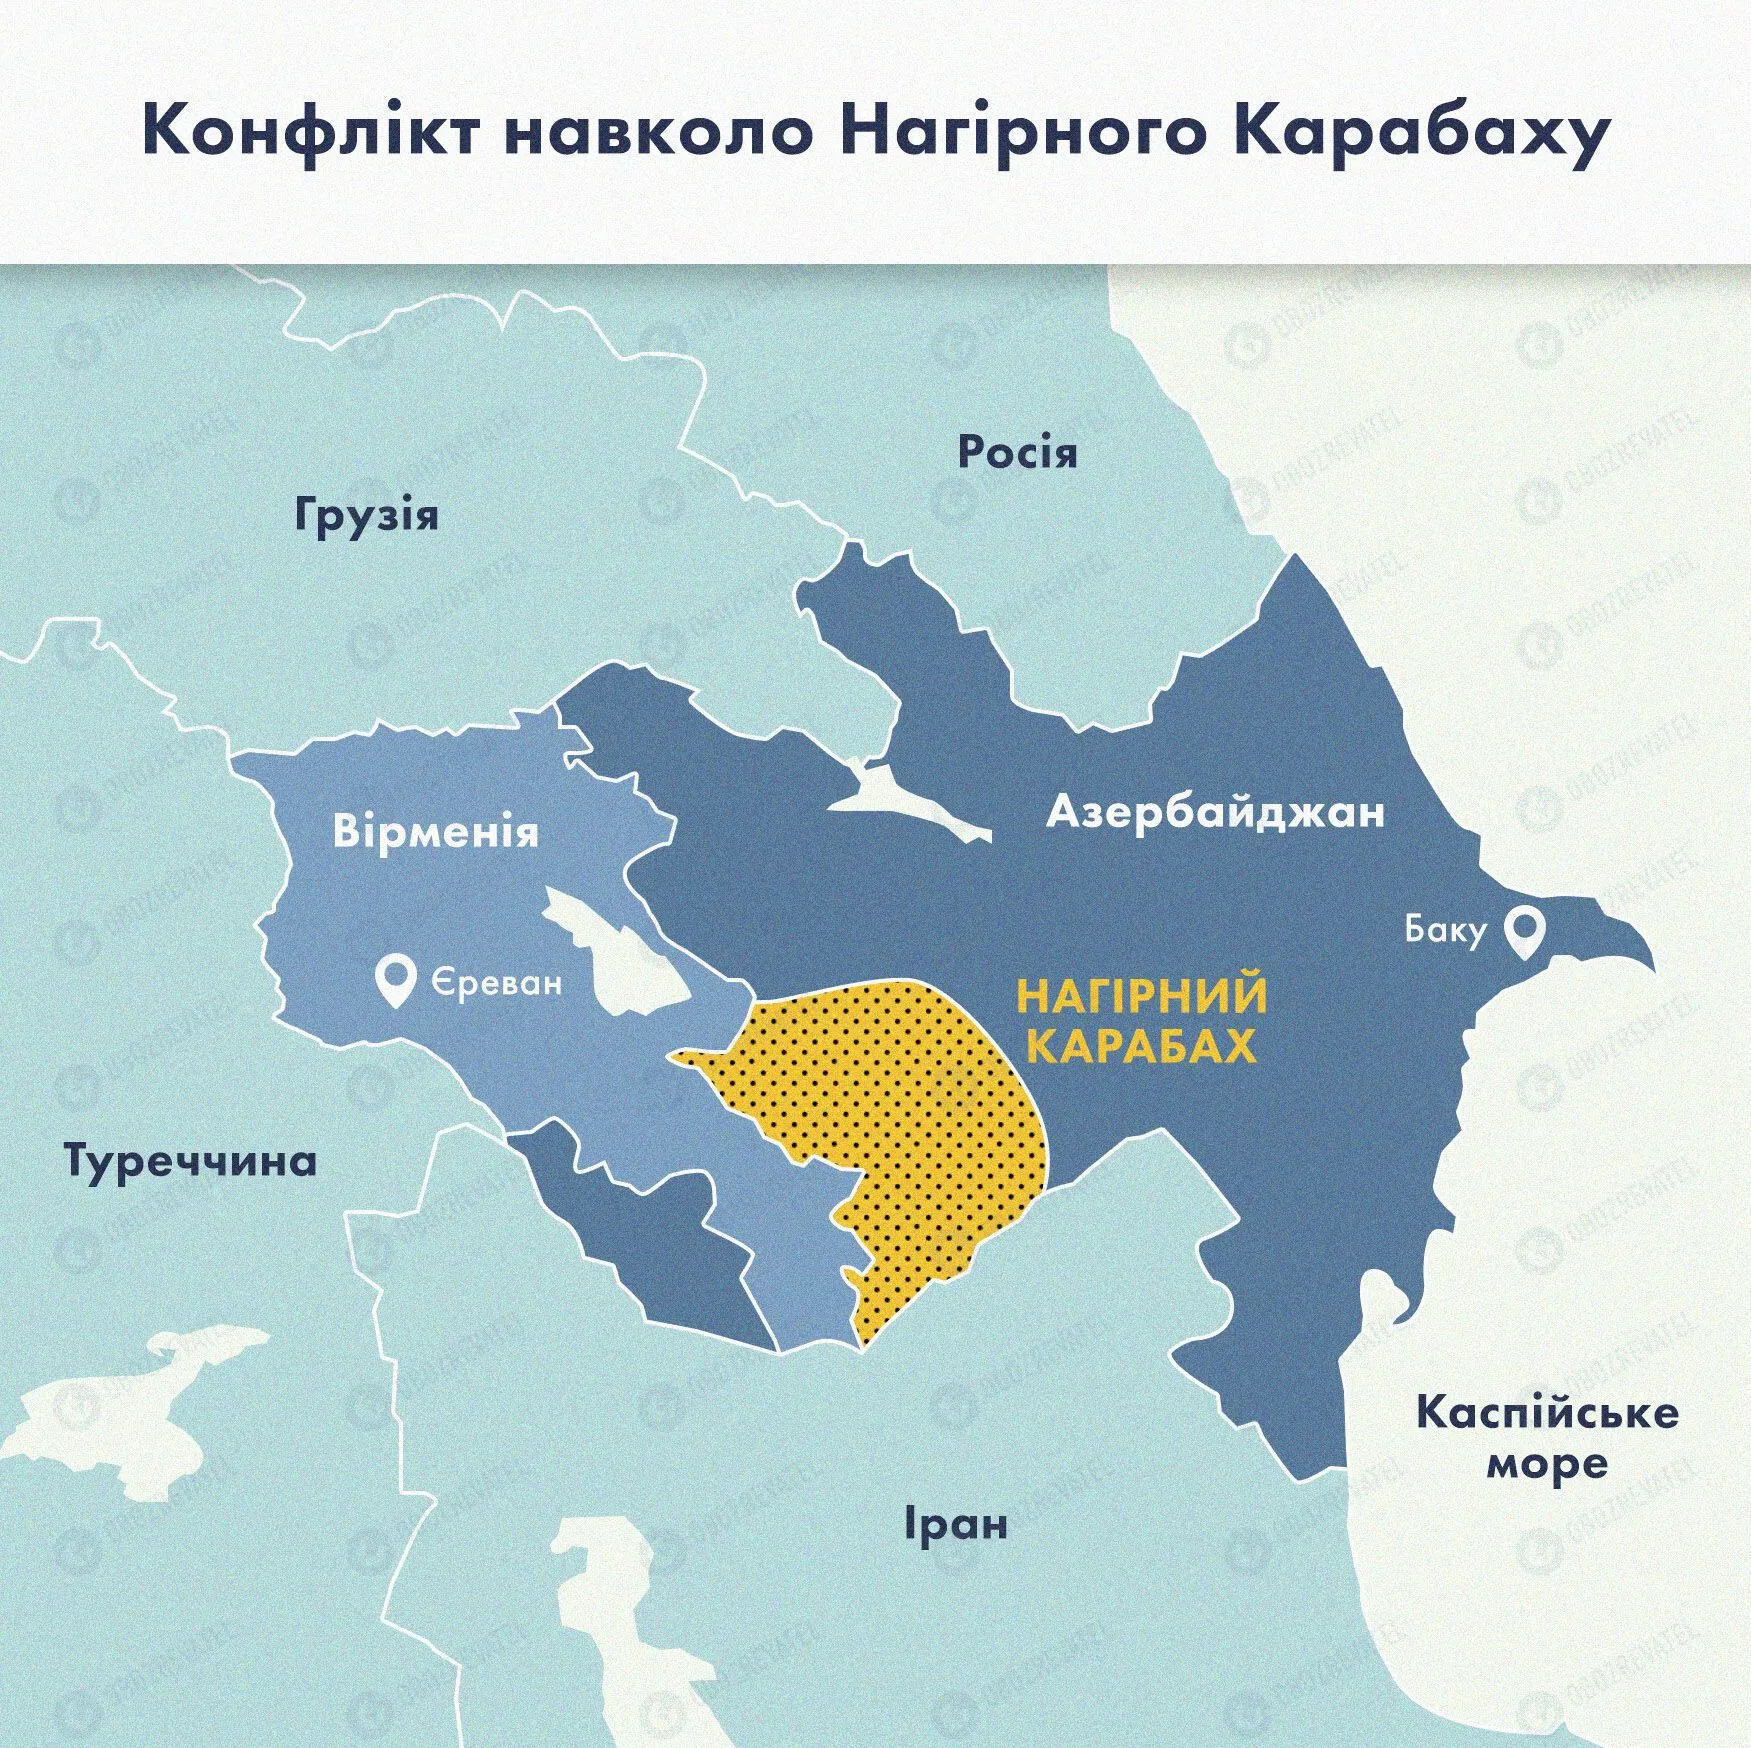 Карта конфлікту